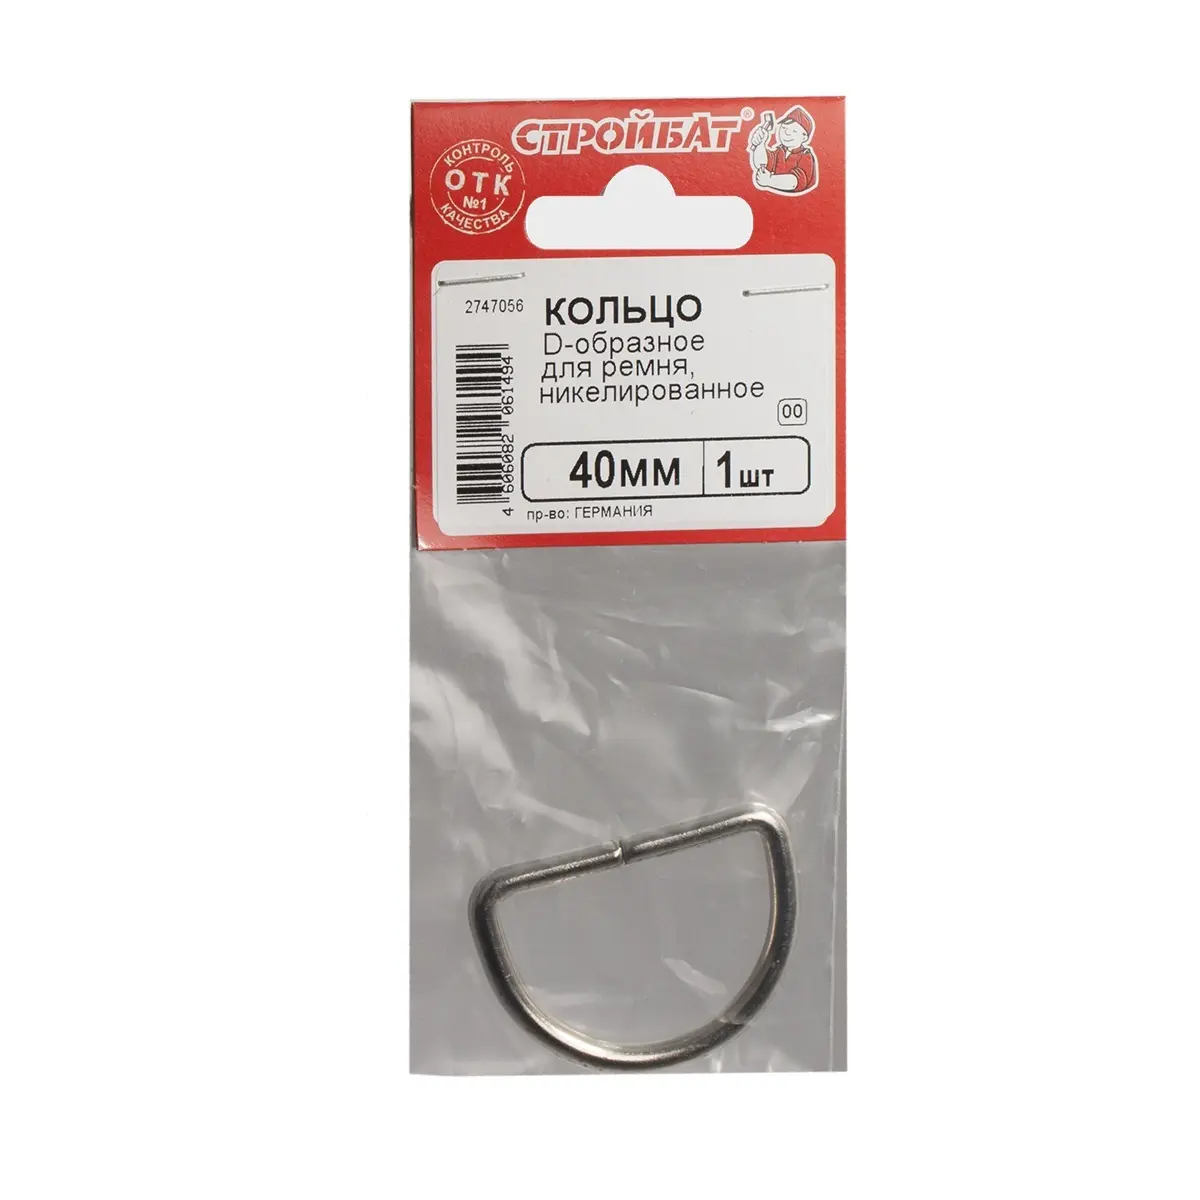 Кольцо D-образное для ремня никелированное 40 мм (упаковка, 1шт) Стройбат